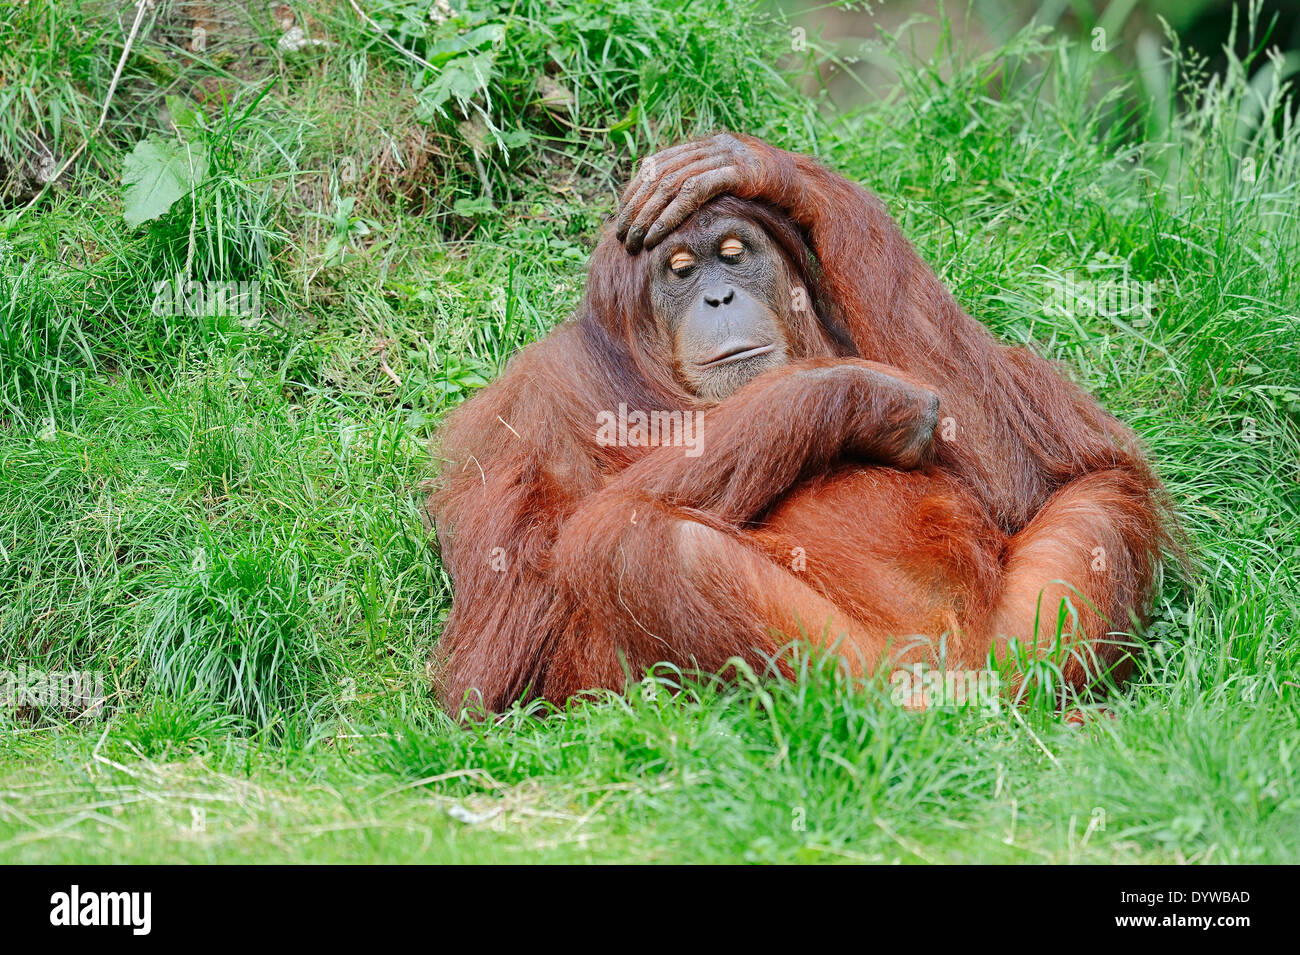 Orang-outan de Sumatra, l'orang-outan de Sumatra (Pongo pygmaeus abelii, Pongo abelii) Banque D'Images